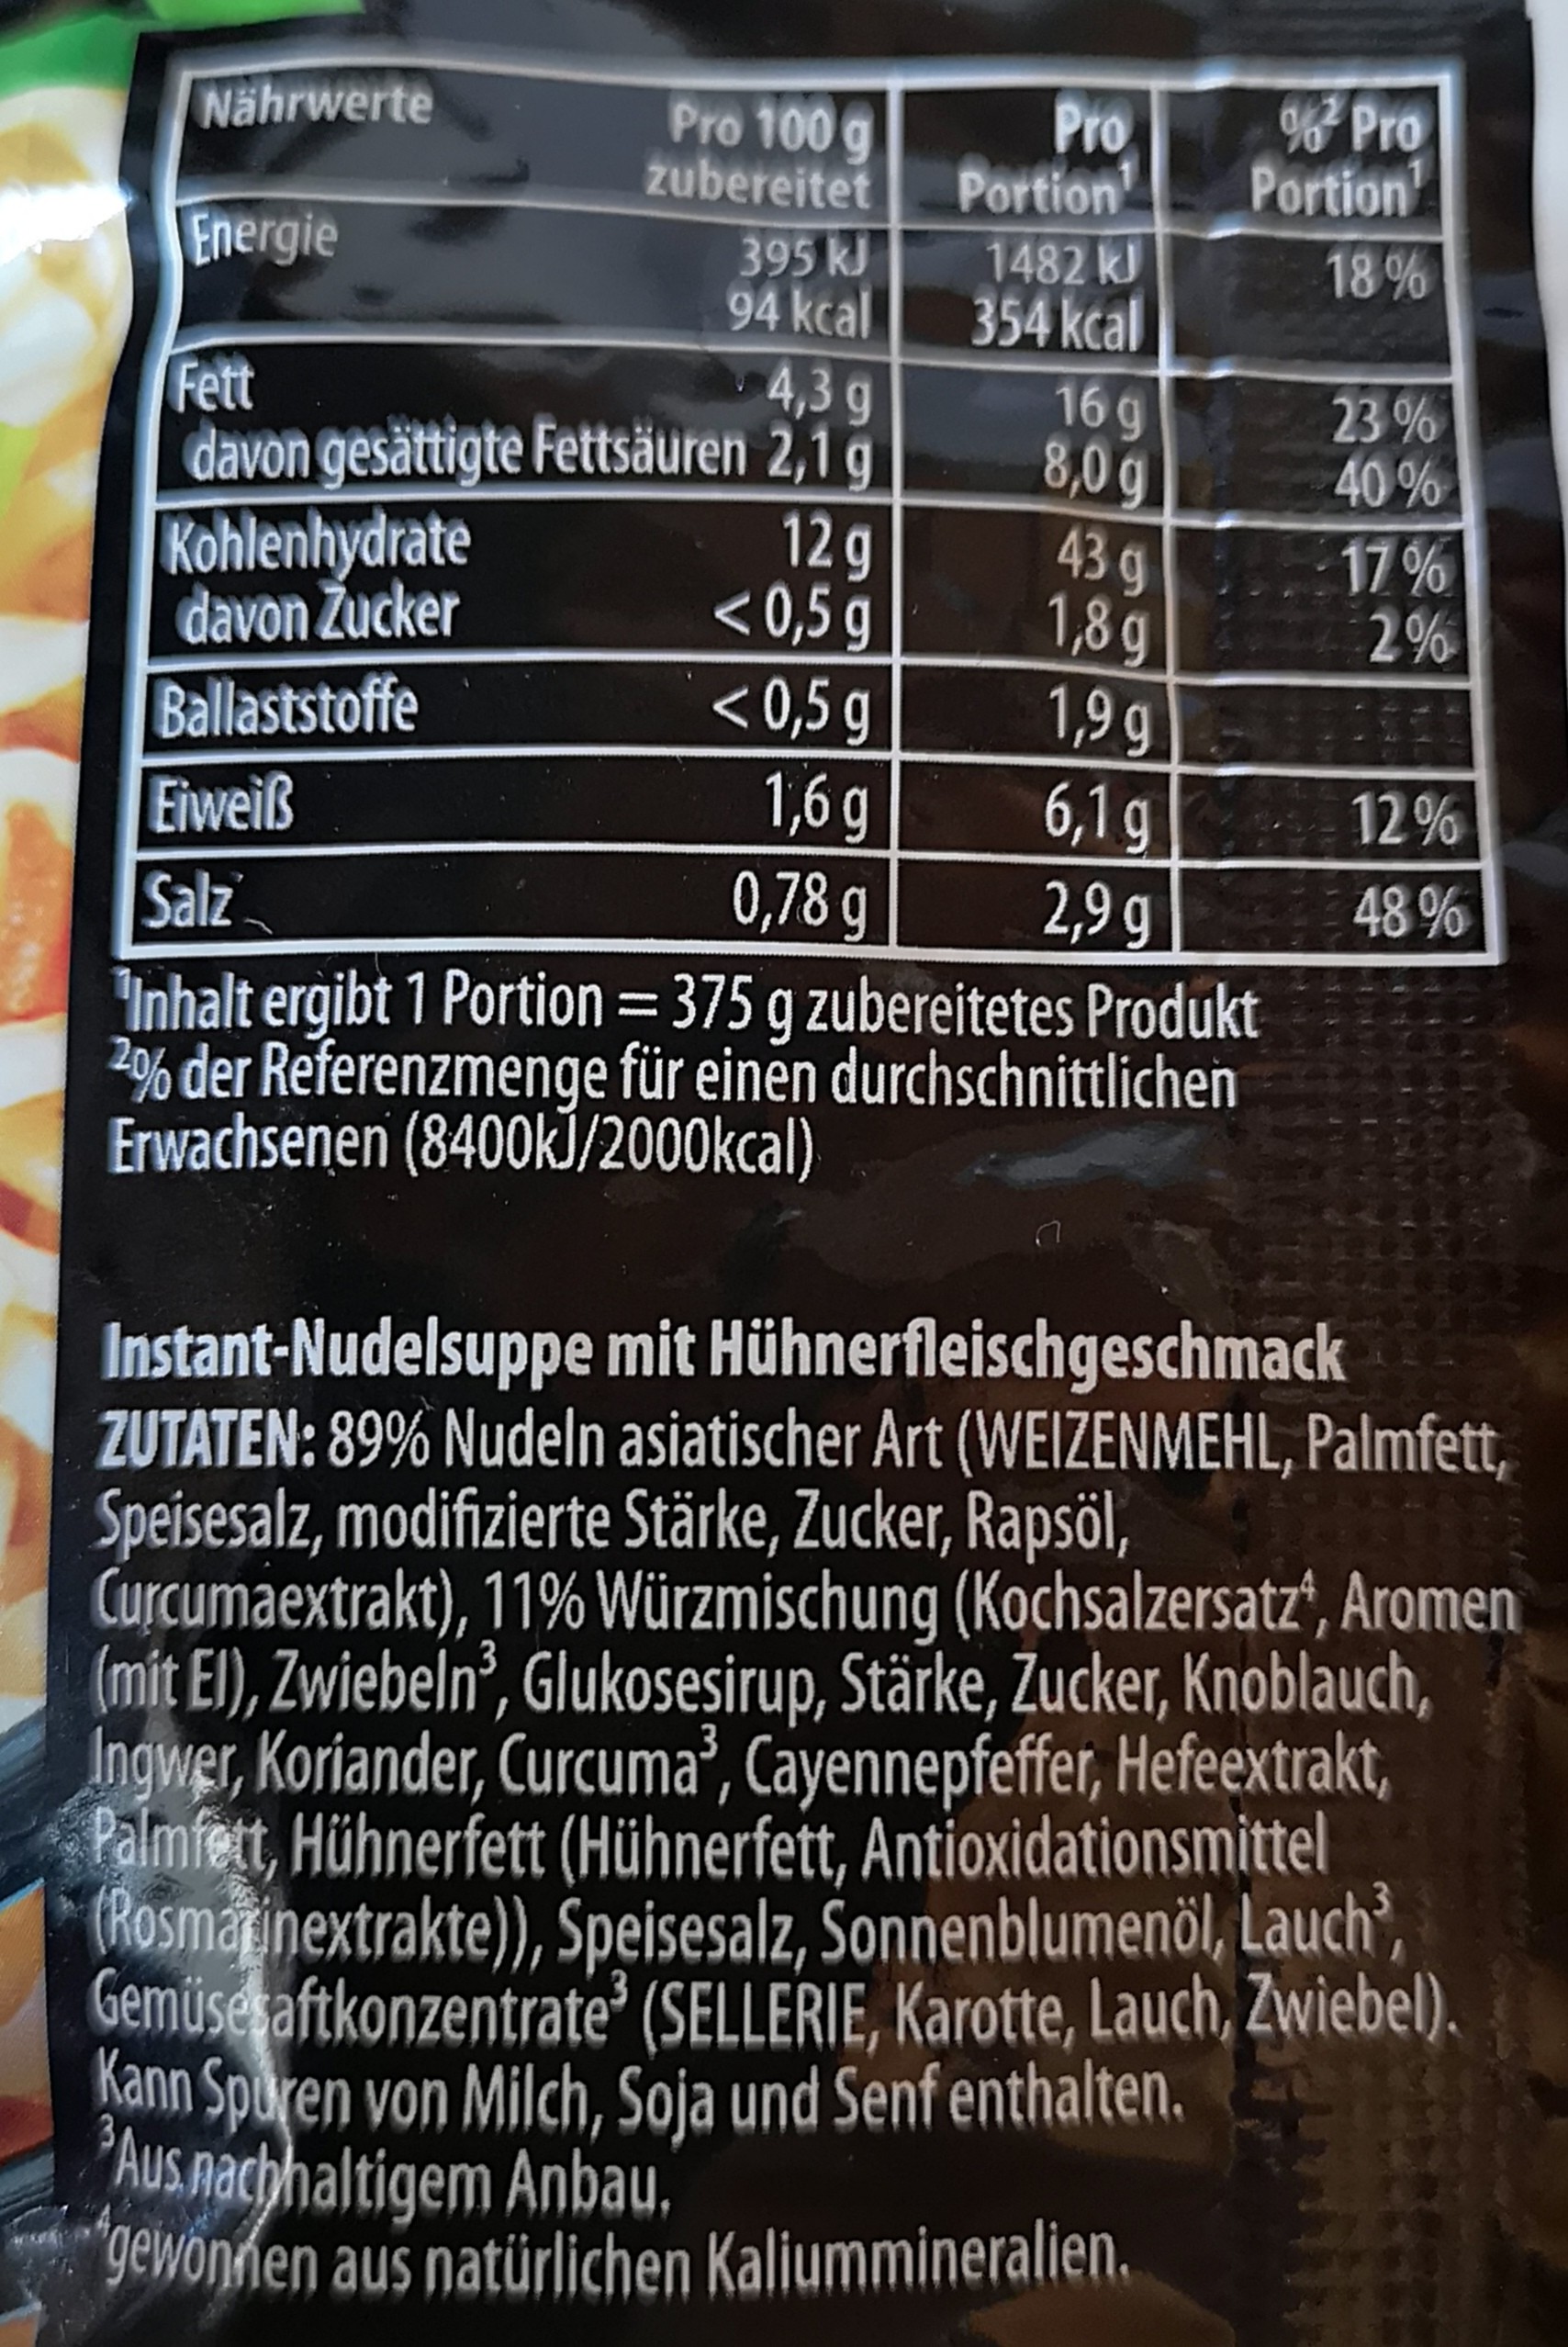 #1259: Knorr "Asia Noodles Huhn Geschmack" (Update 2022)